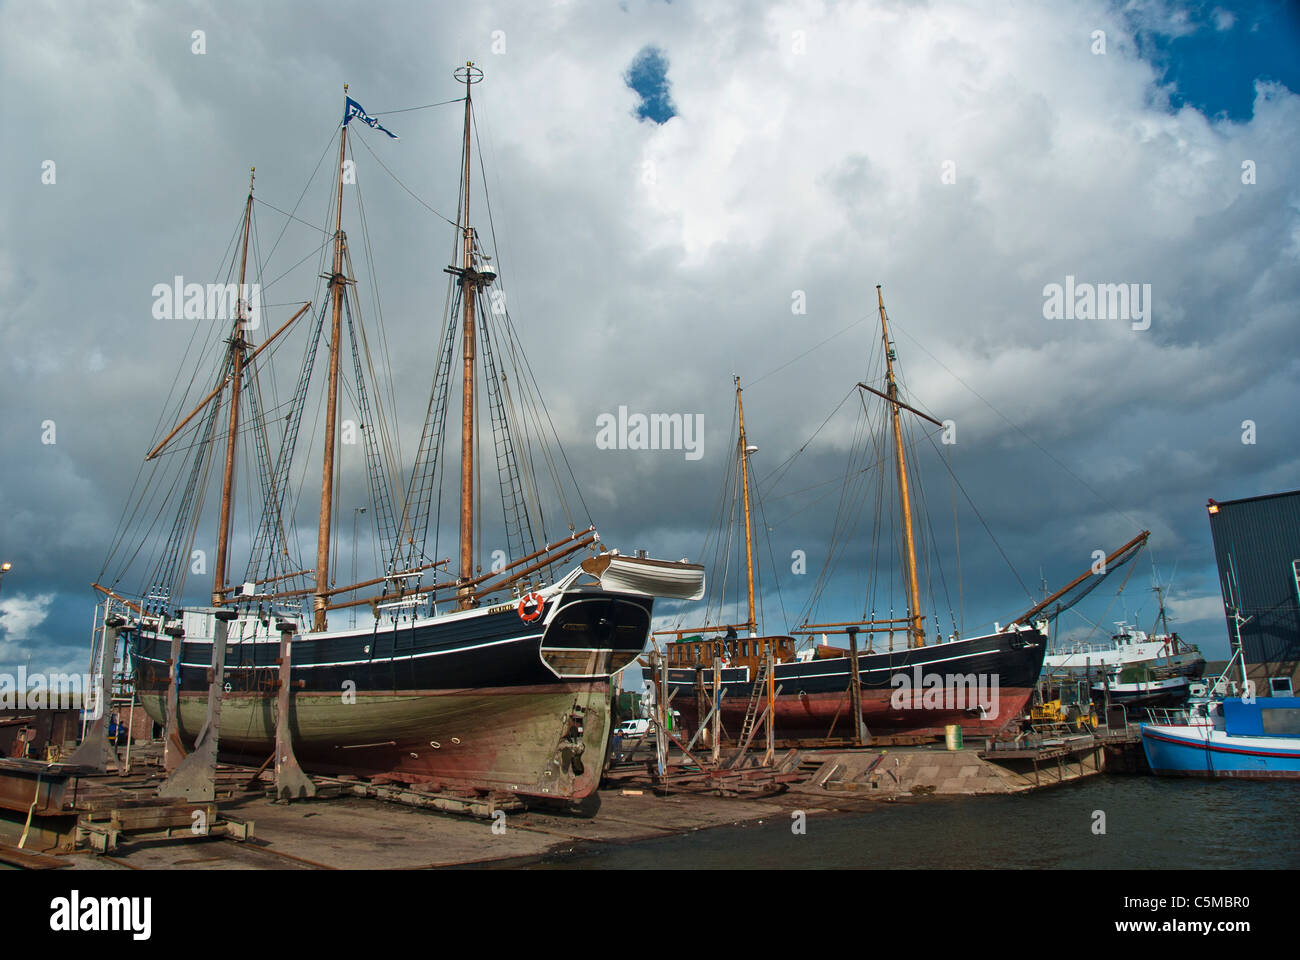 Zwei alte Segelschiffe sind im Trockendock, Hafen von Hvide Sande, Jütland,  Dänemark Stockfotografie - Alamy